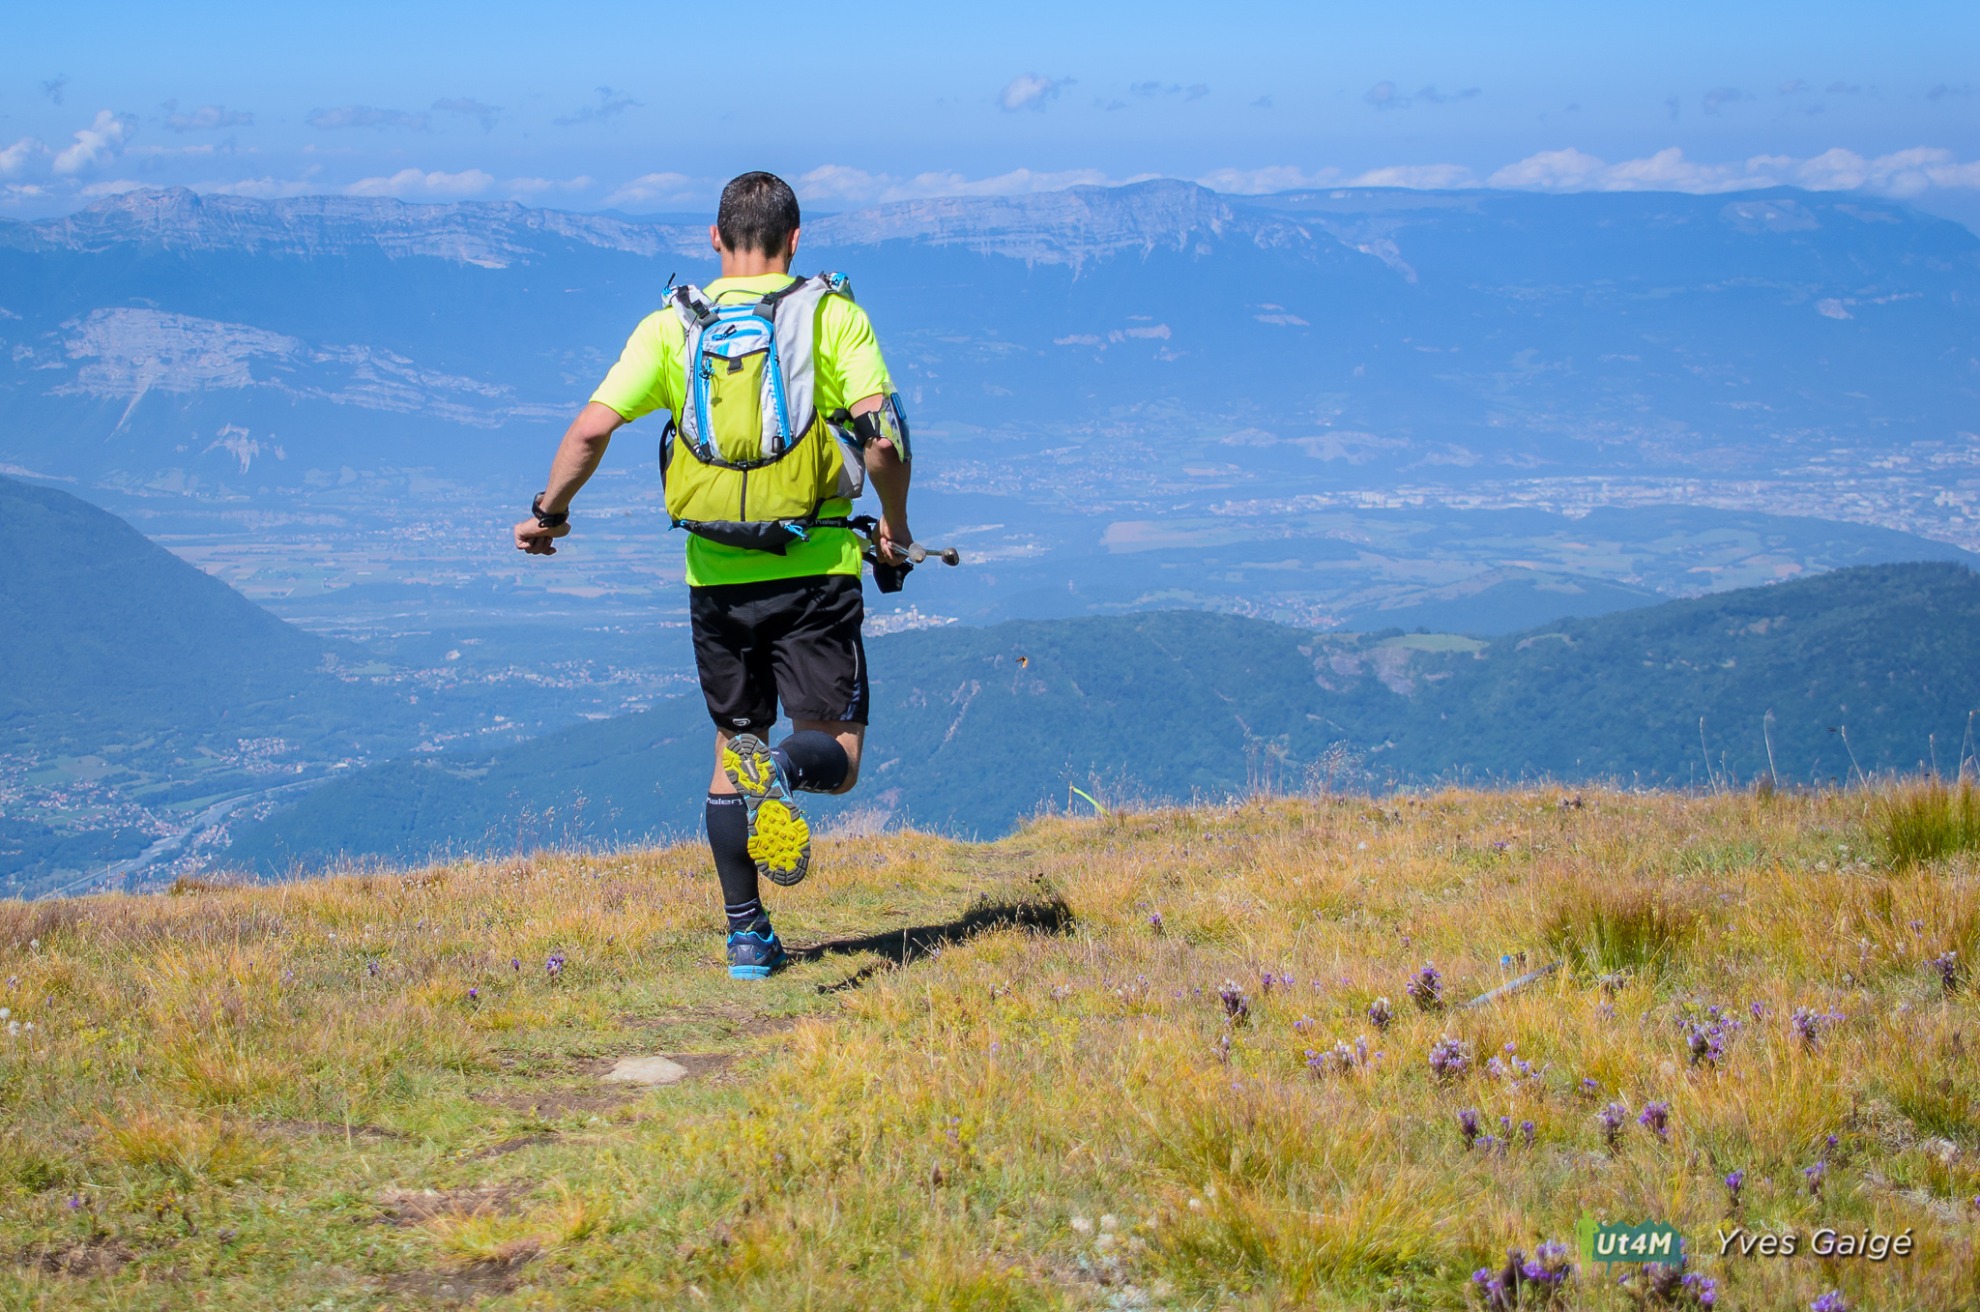 Trail running - Préparez vos défis !: Des courses nature à l'ultra-trail :  entraînement et perfectionnement